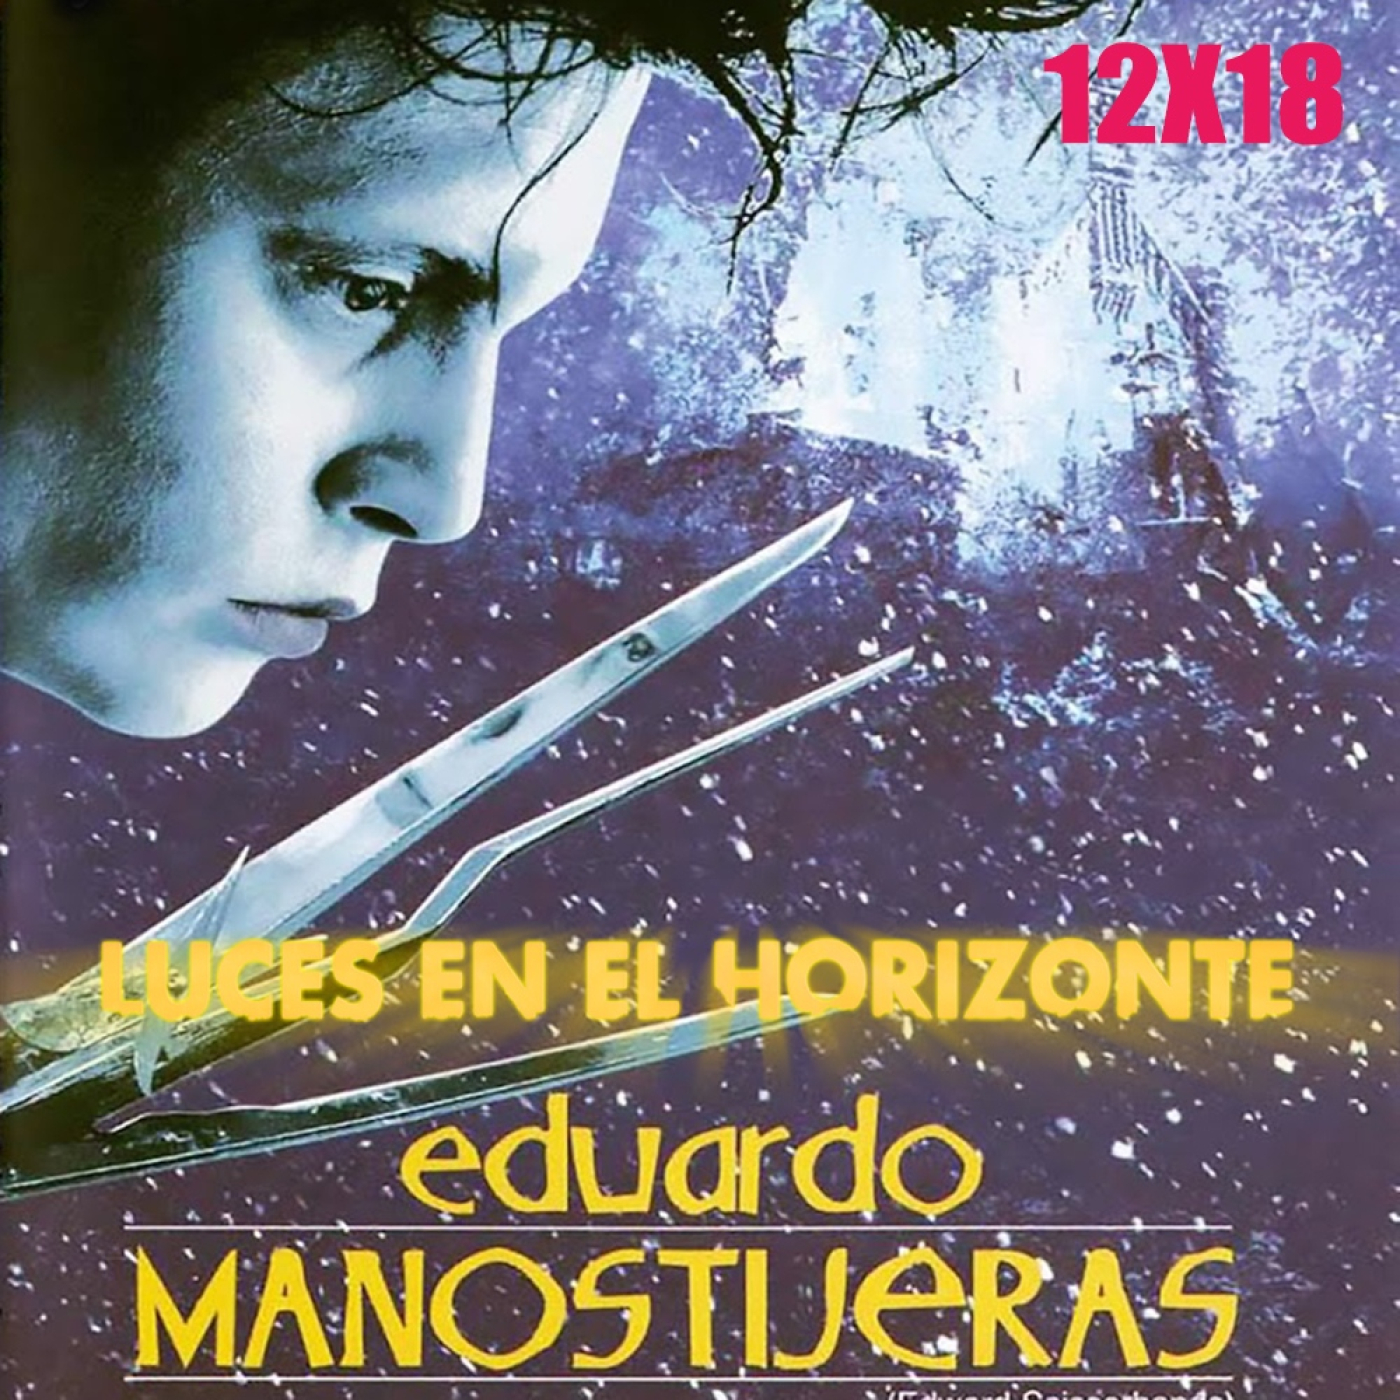 Eduardo Manostijeras - Luces en el Horizonte 12X18